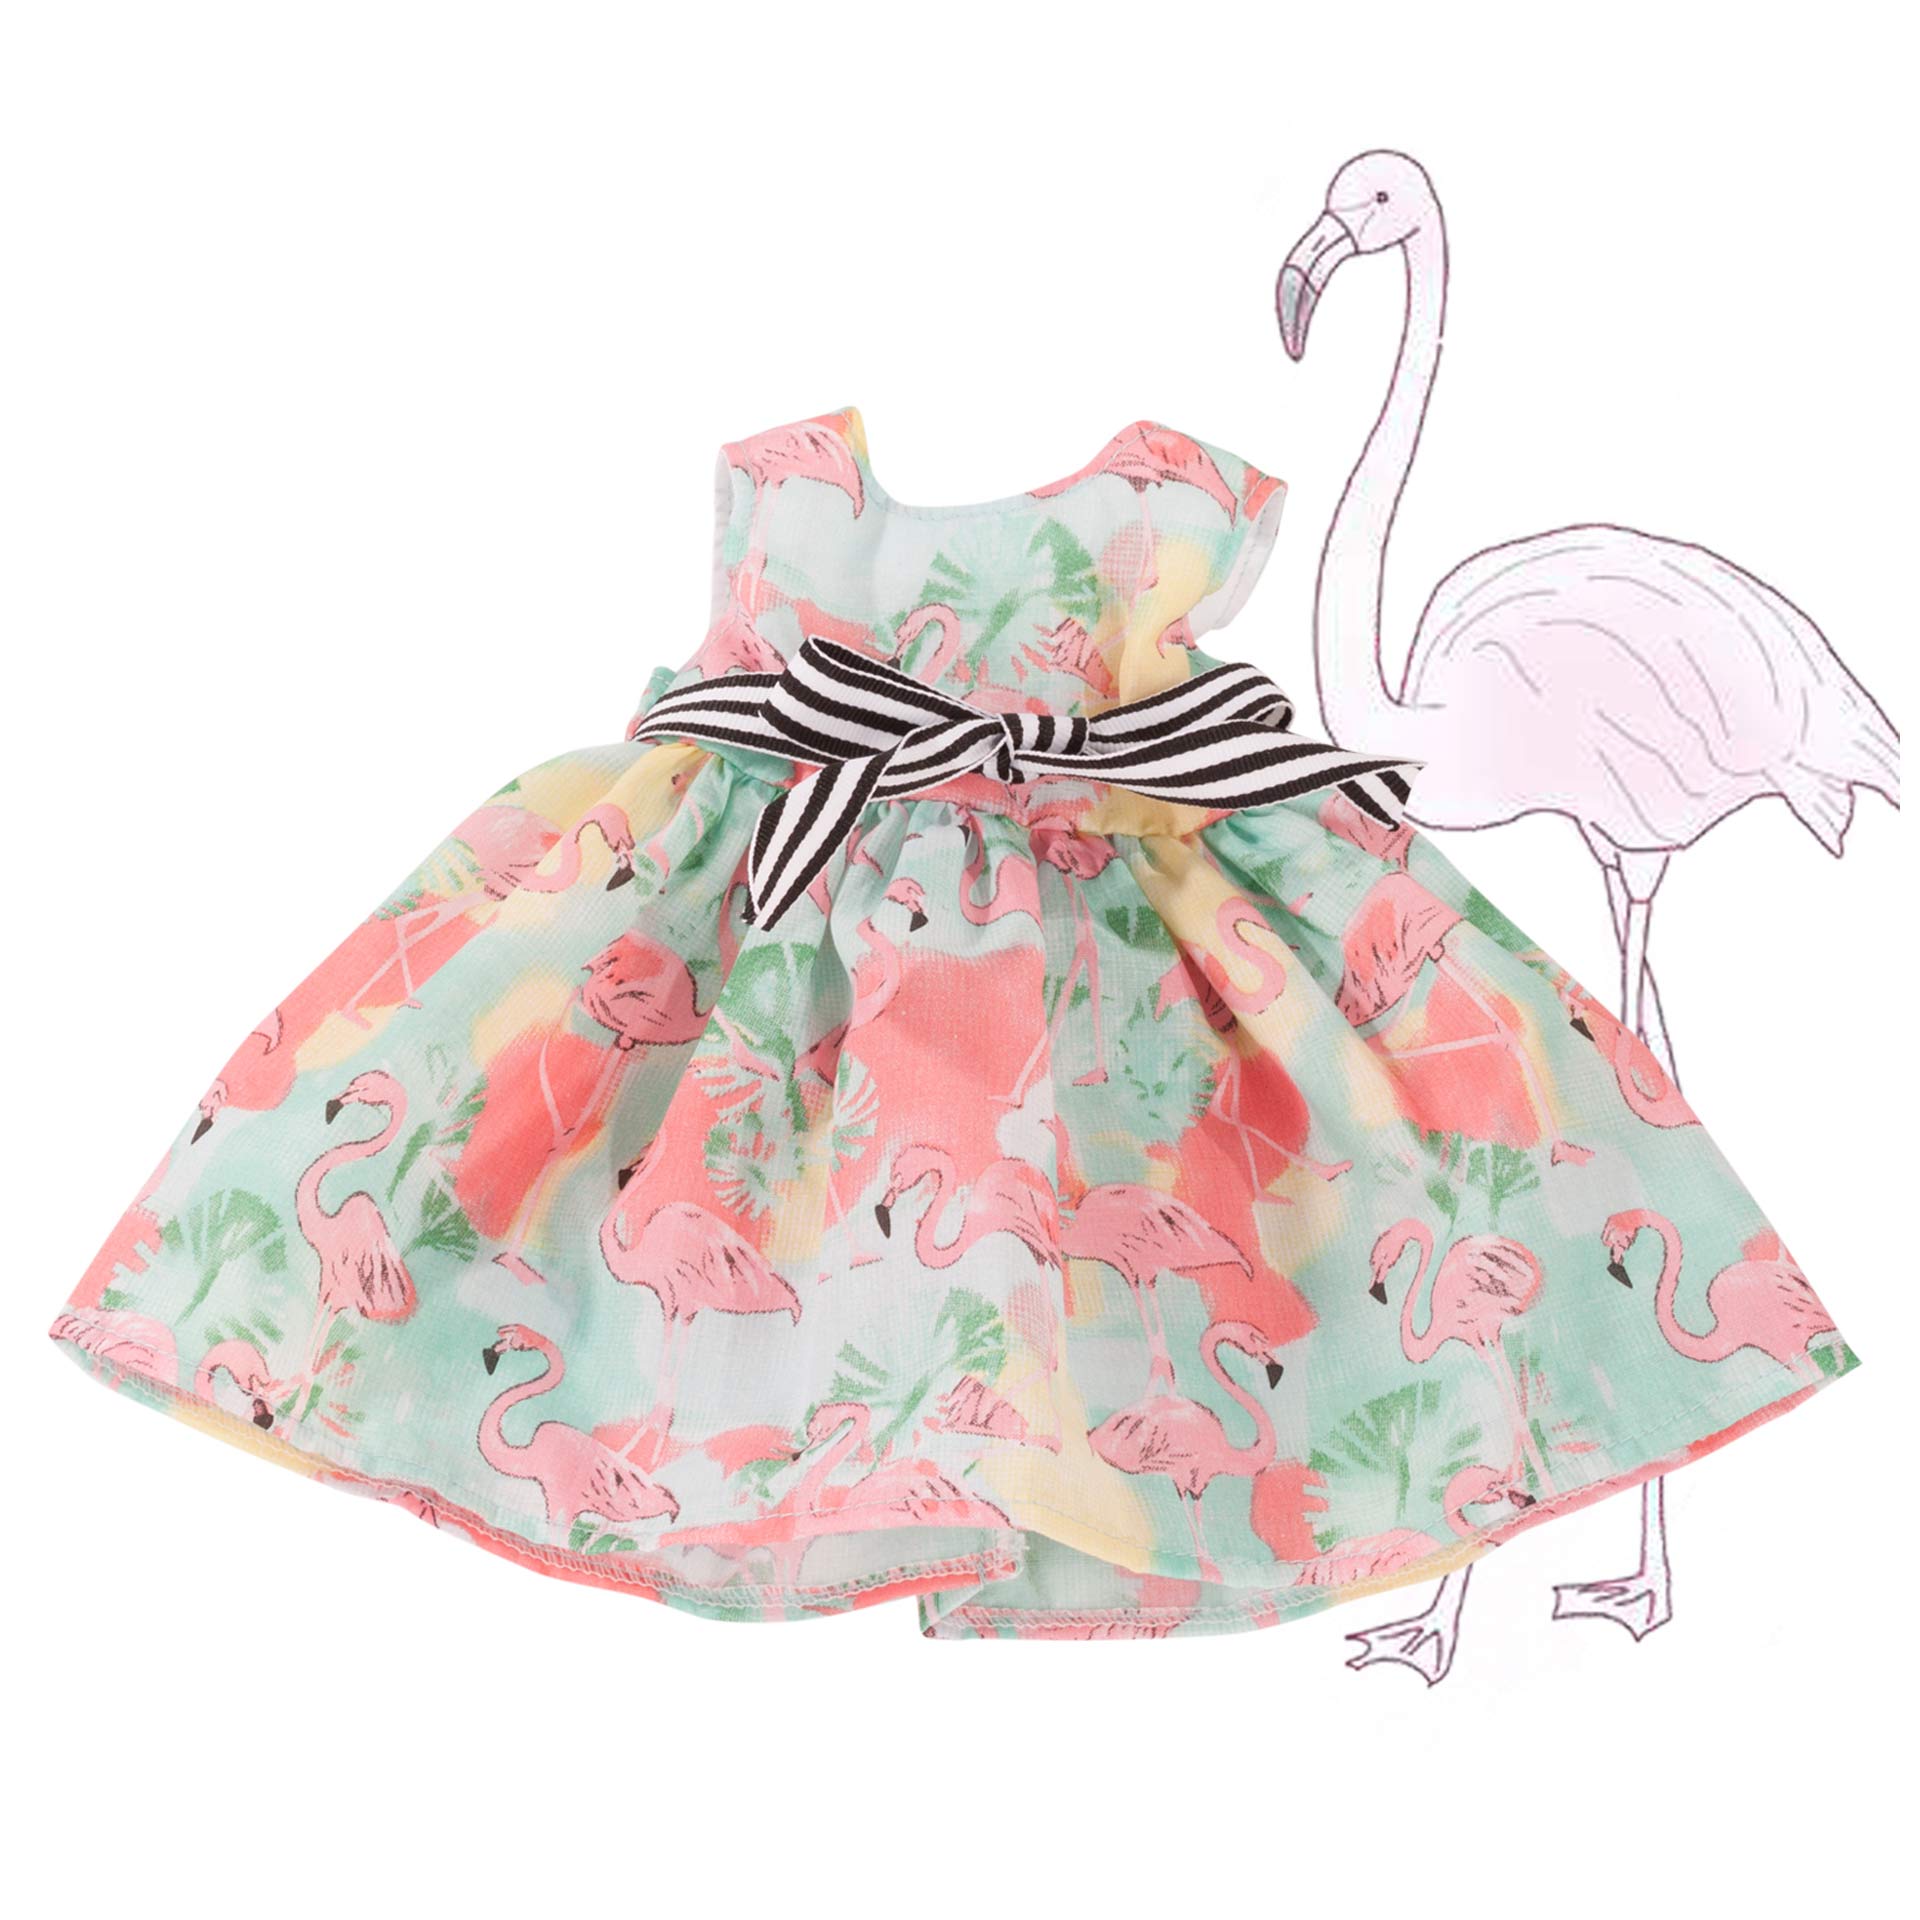 kleid-flamingo-stehpuppenbekleidung-sommerkleid-mit-schleife-goetz